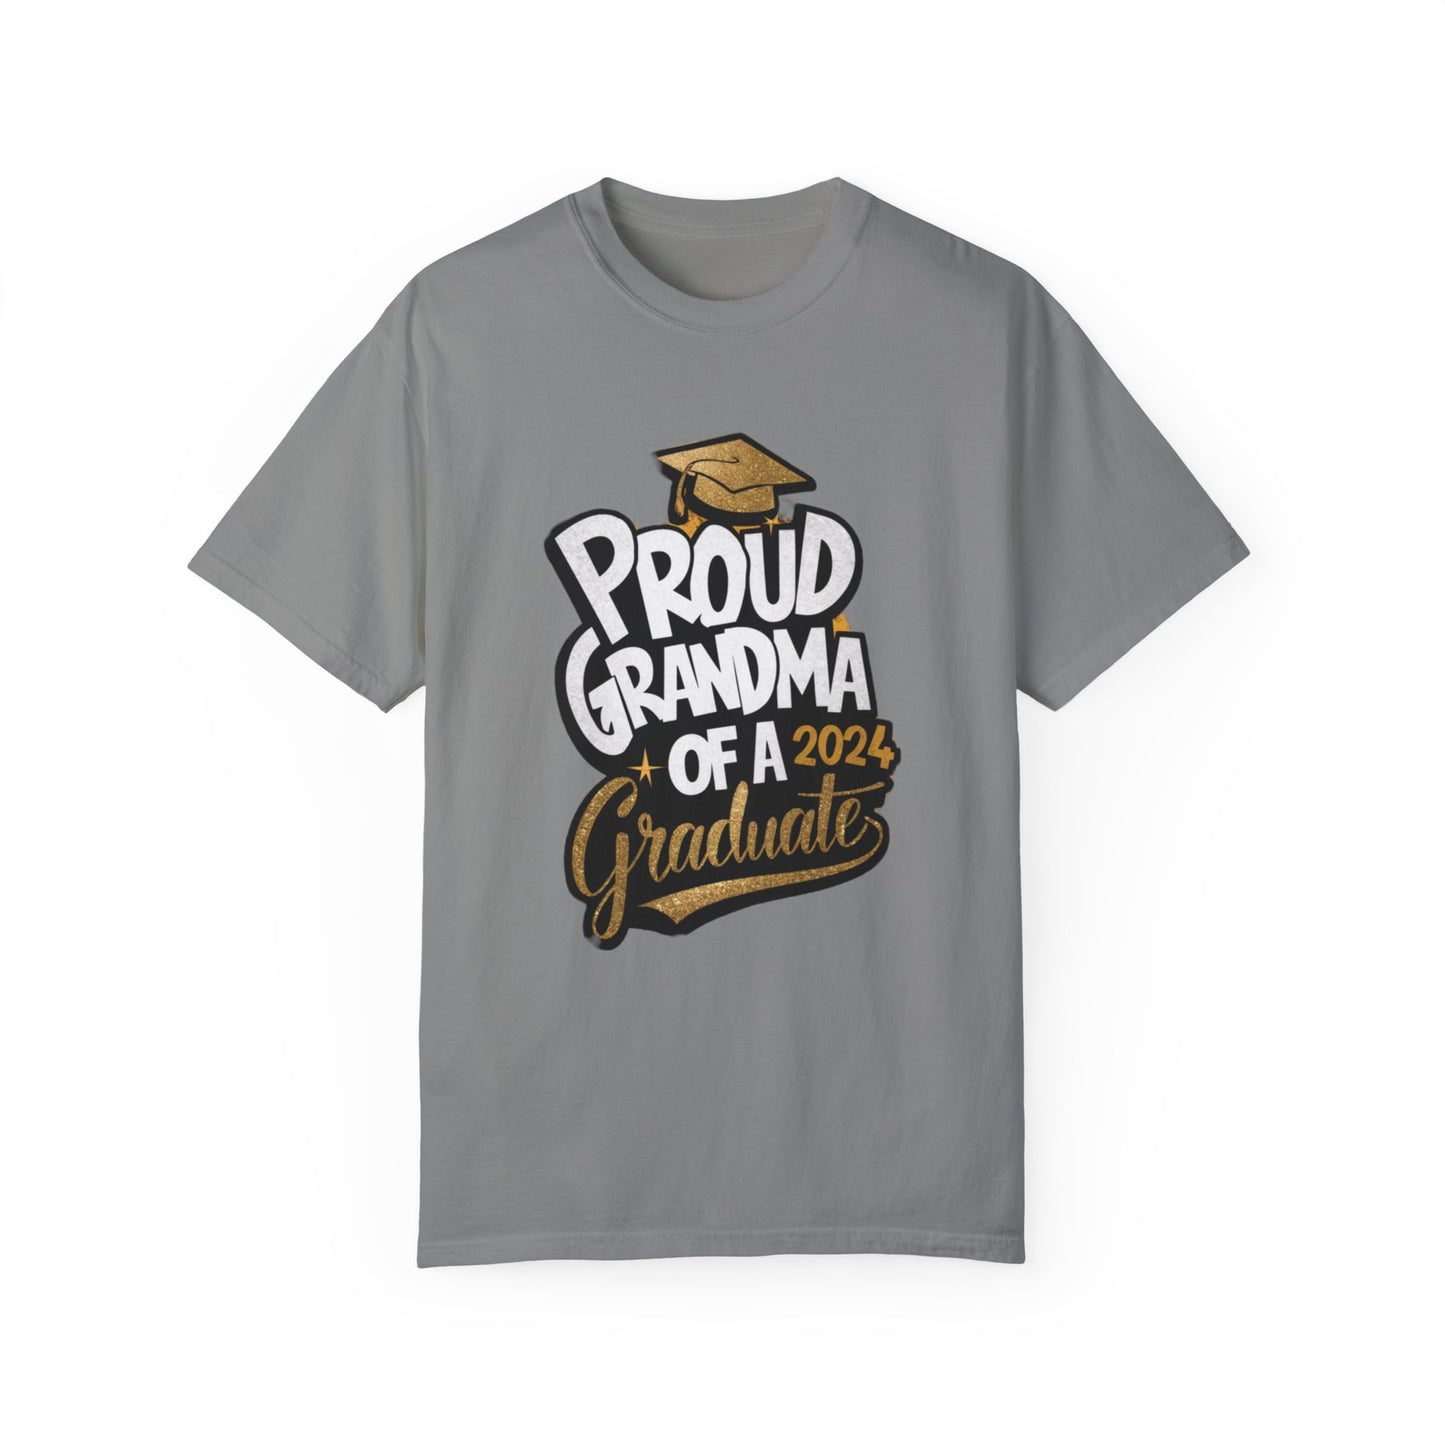 Proud of Grandma 2024 Graduate Unisex Garment-dyed T-shirt Cotton Funny Humorous Graphic Soft Premium Unisex Men Women Granite T-shirt Birthday Gift-4